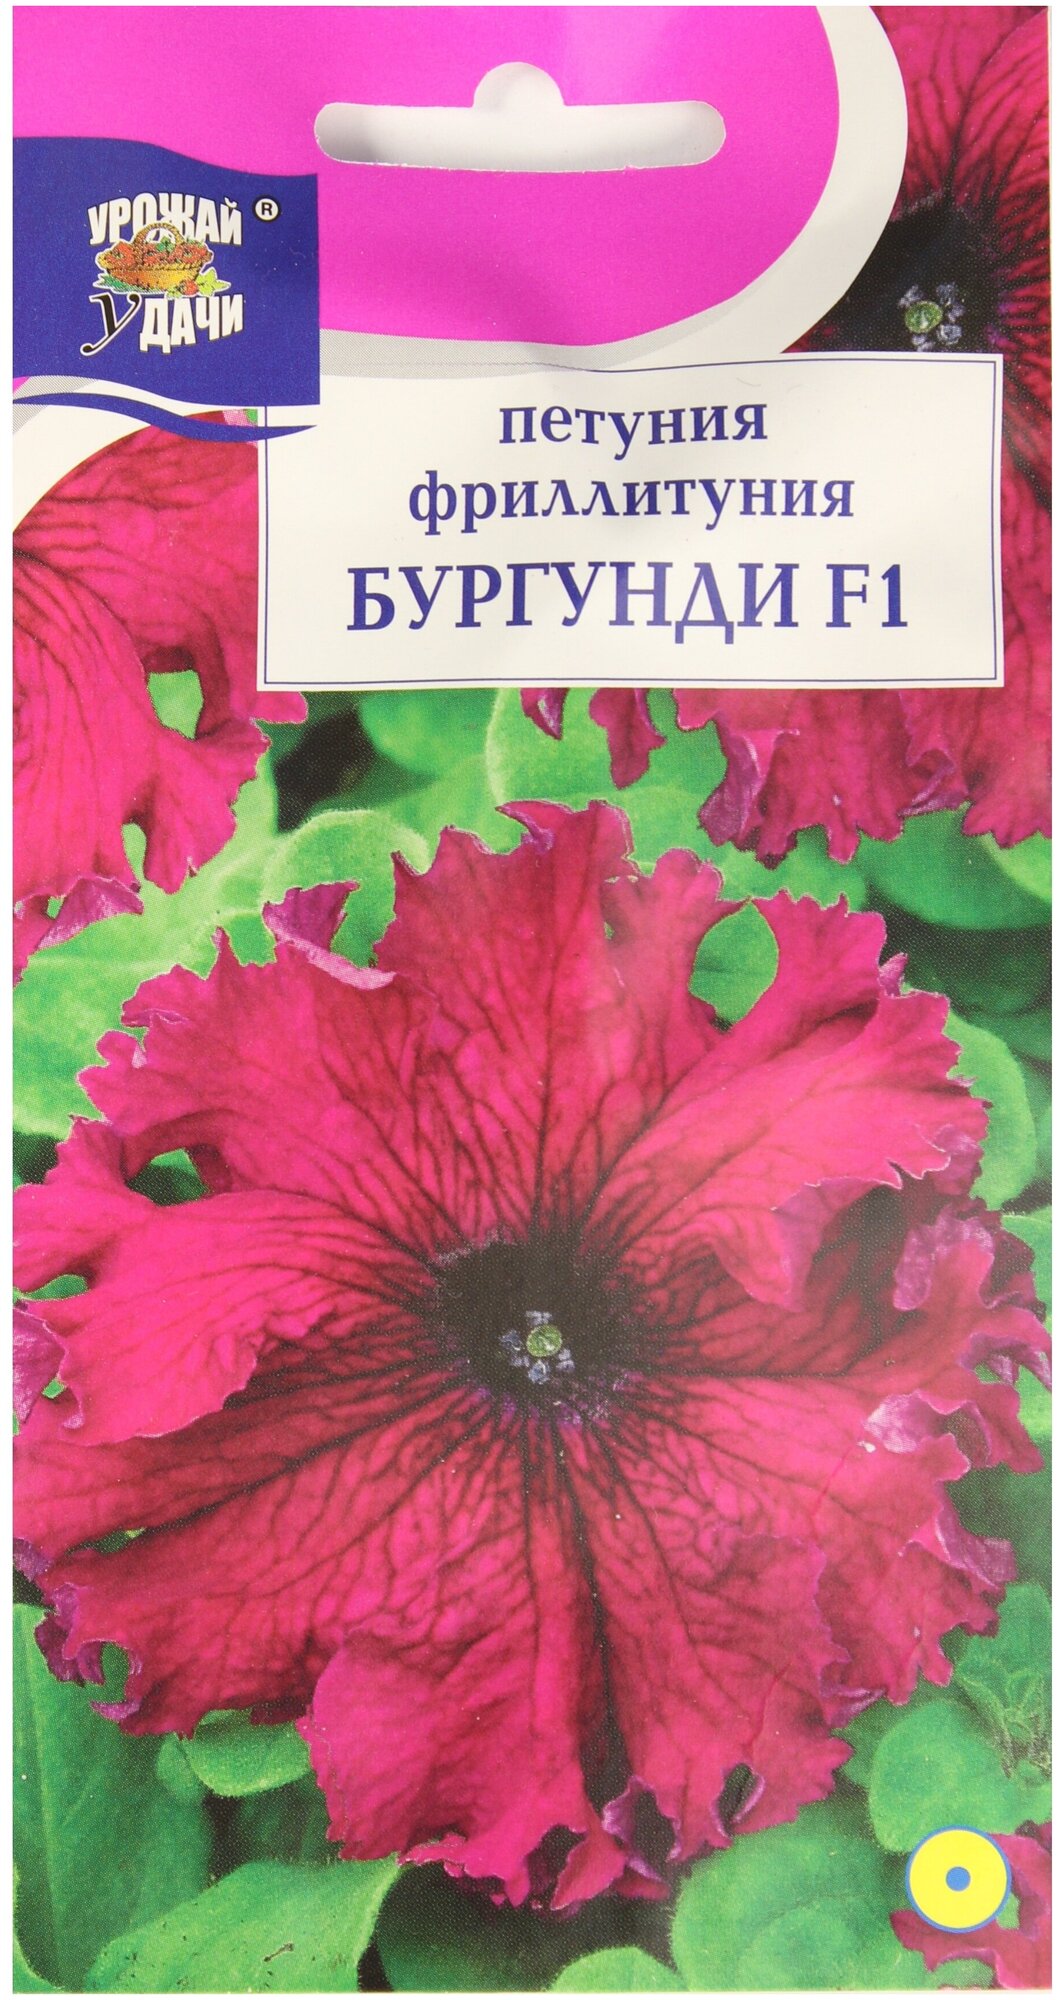 Семена цветов Петуния фриллитуния "Бургунди F1", 8 шт. в амп. - фотография № 1